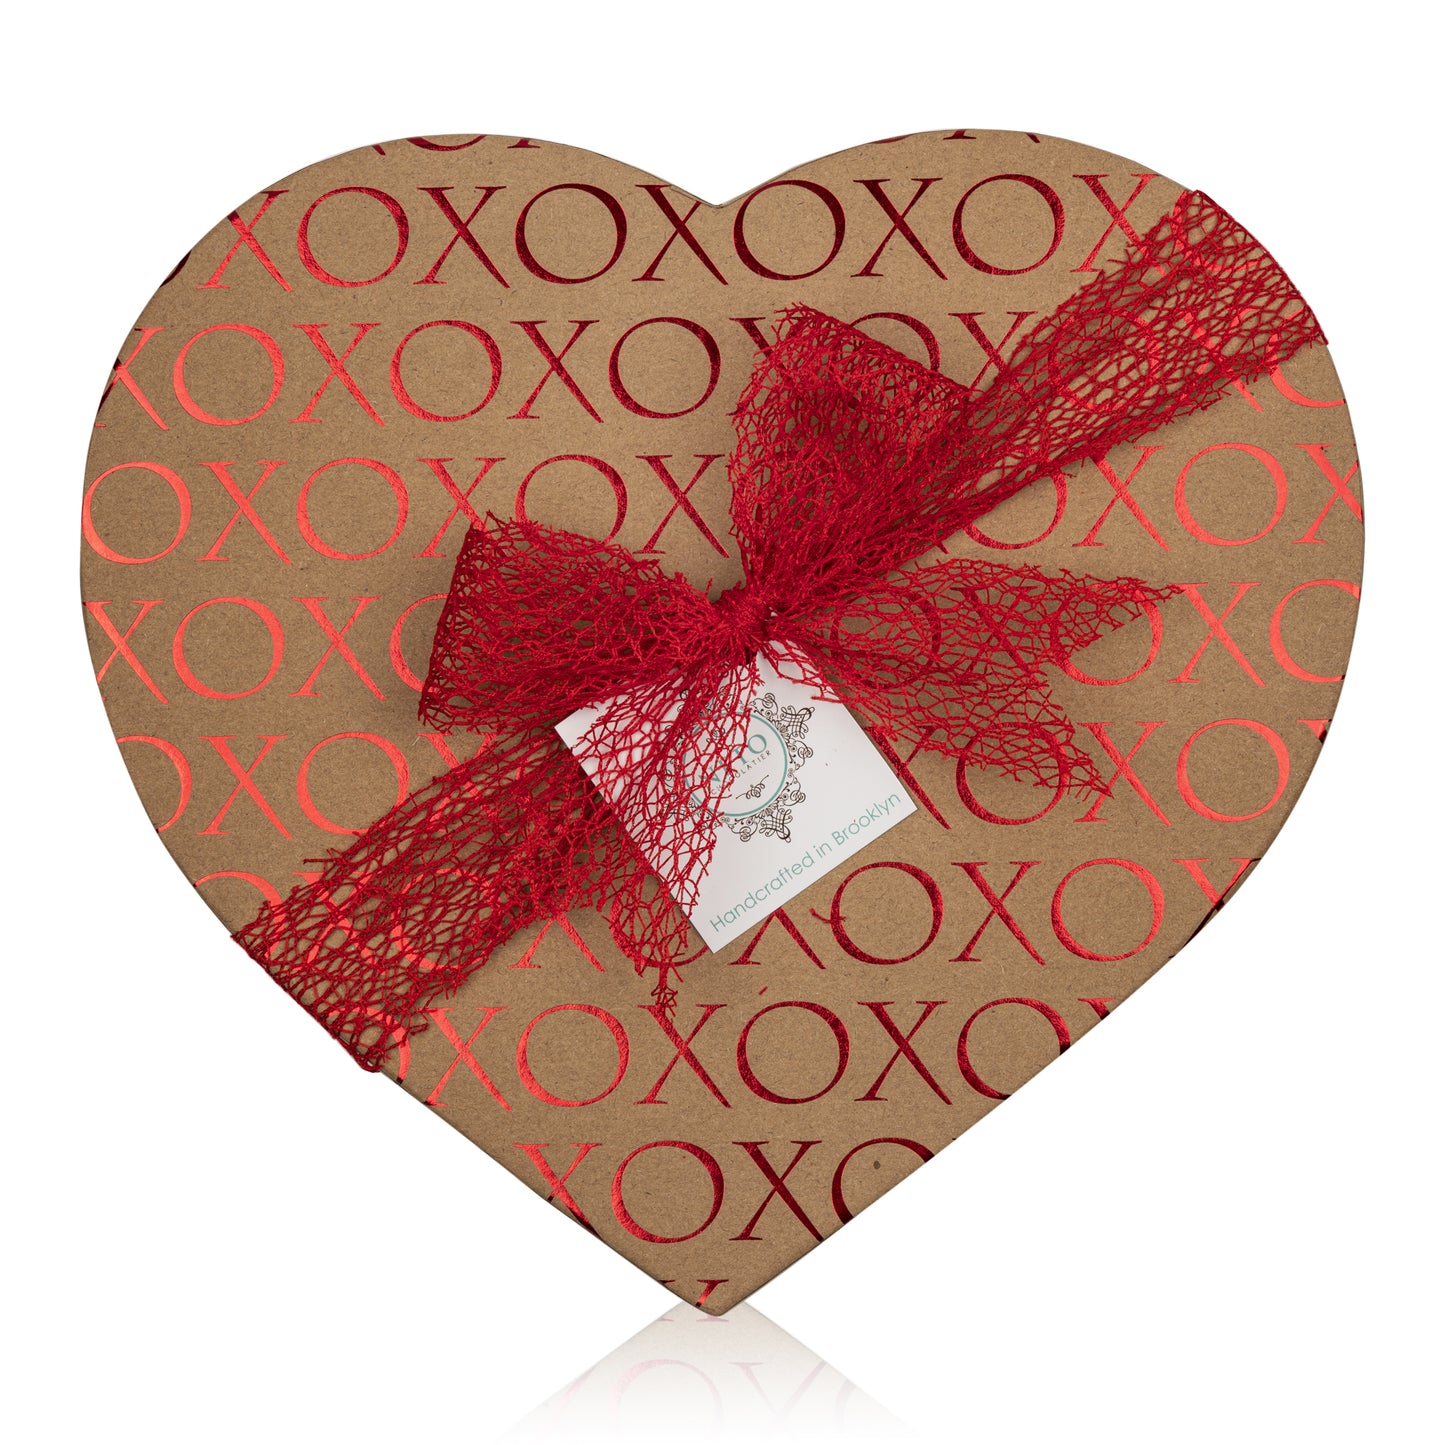 XOXO Large Heart Shaped Gift Box